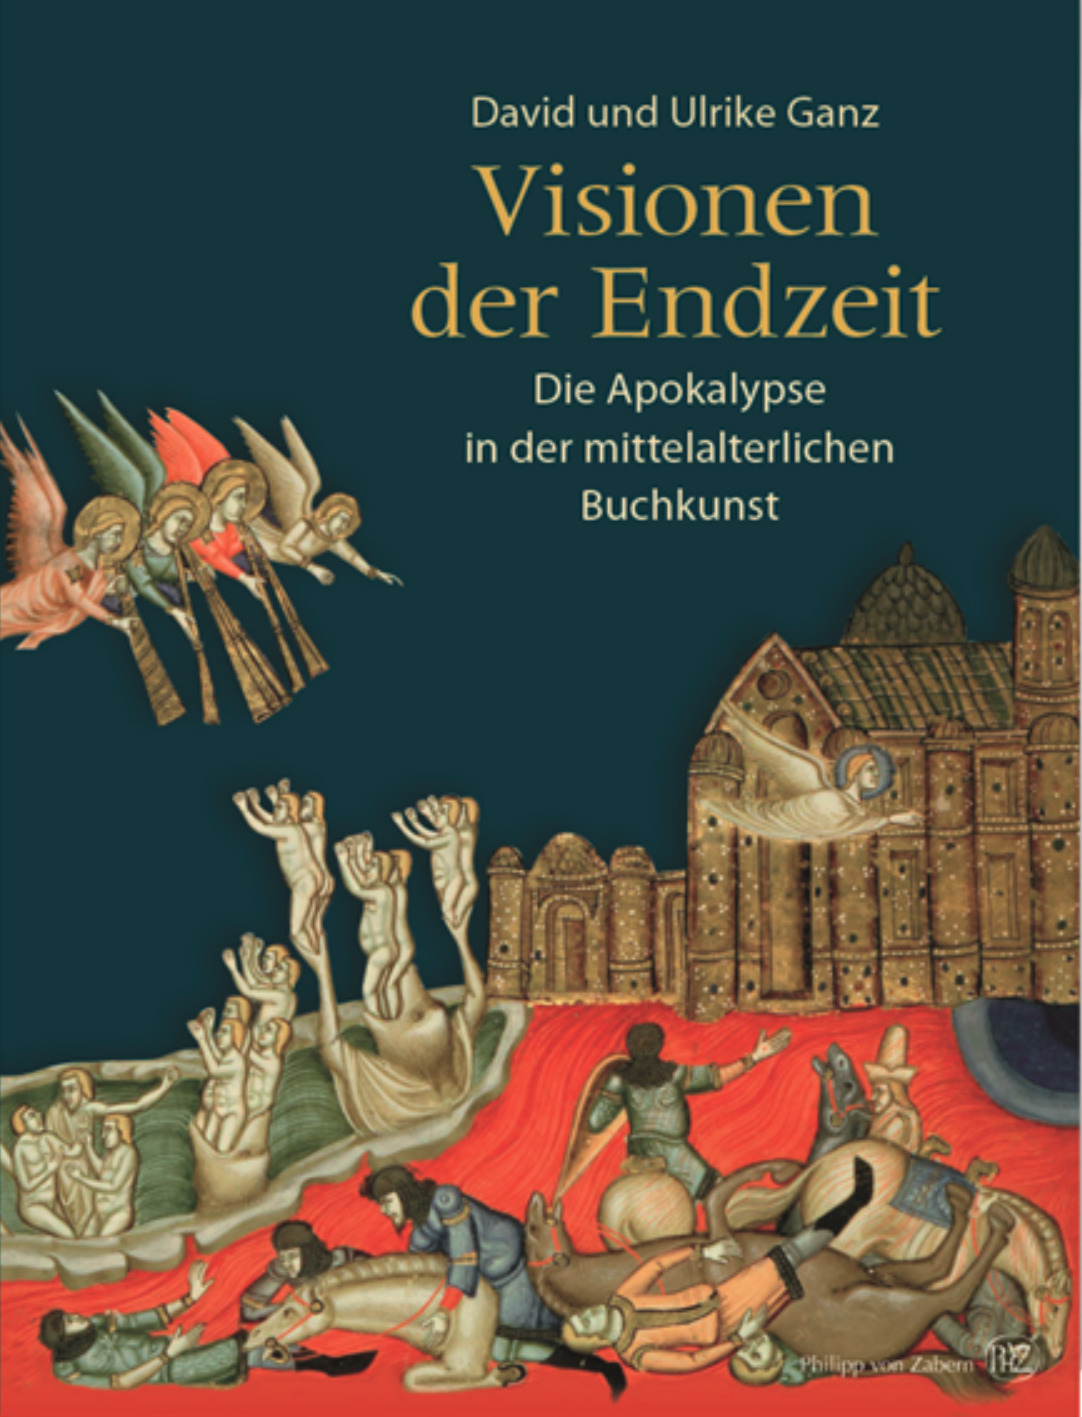 Visionen der Endzeit: Die Apokalypse in der mittelalterlichen Buchkunst